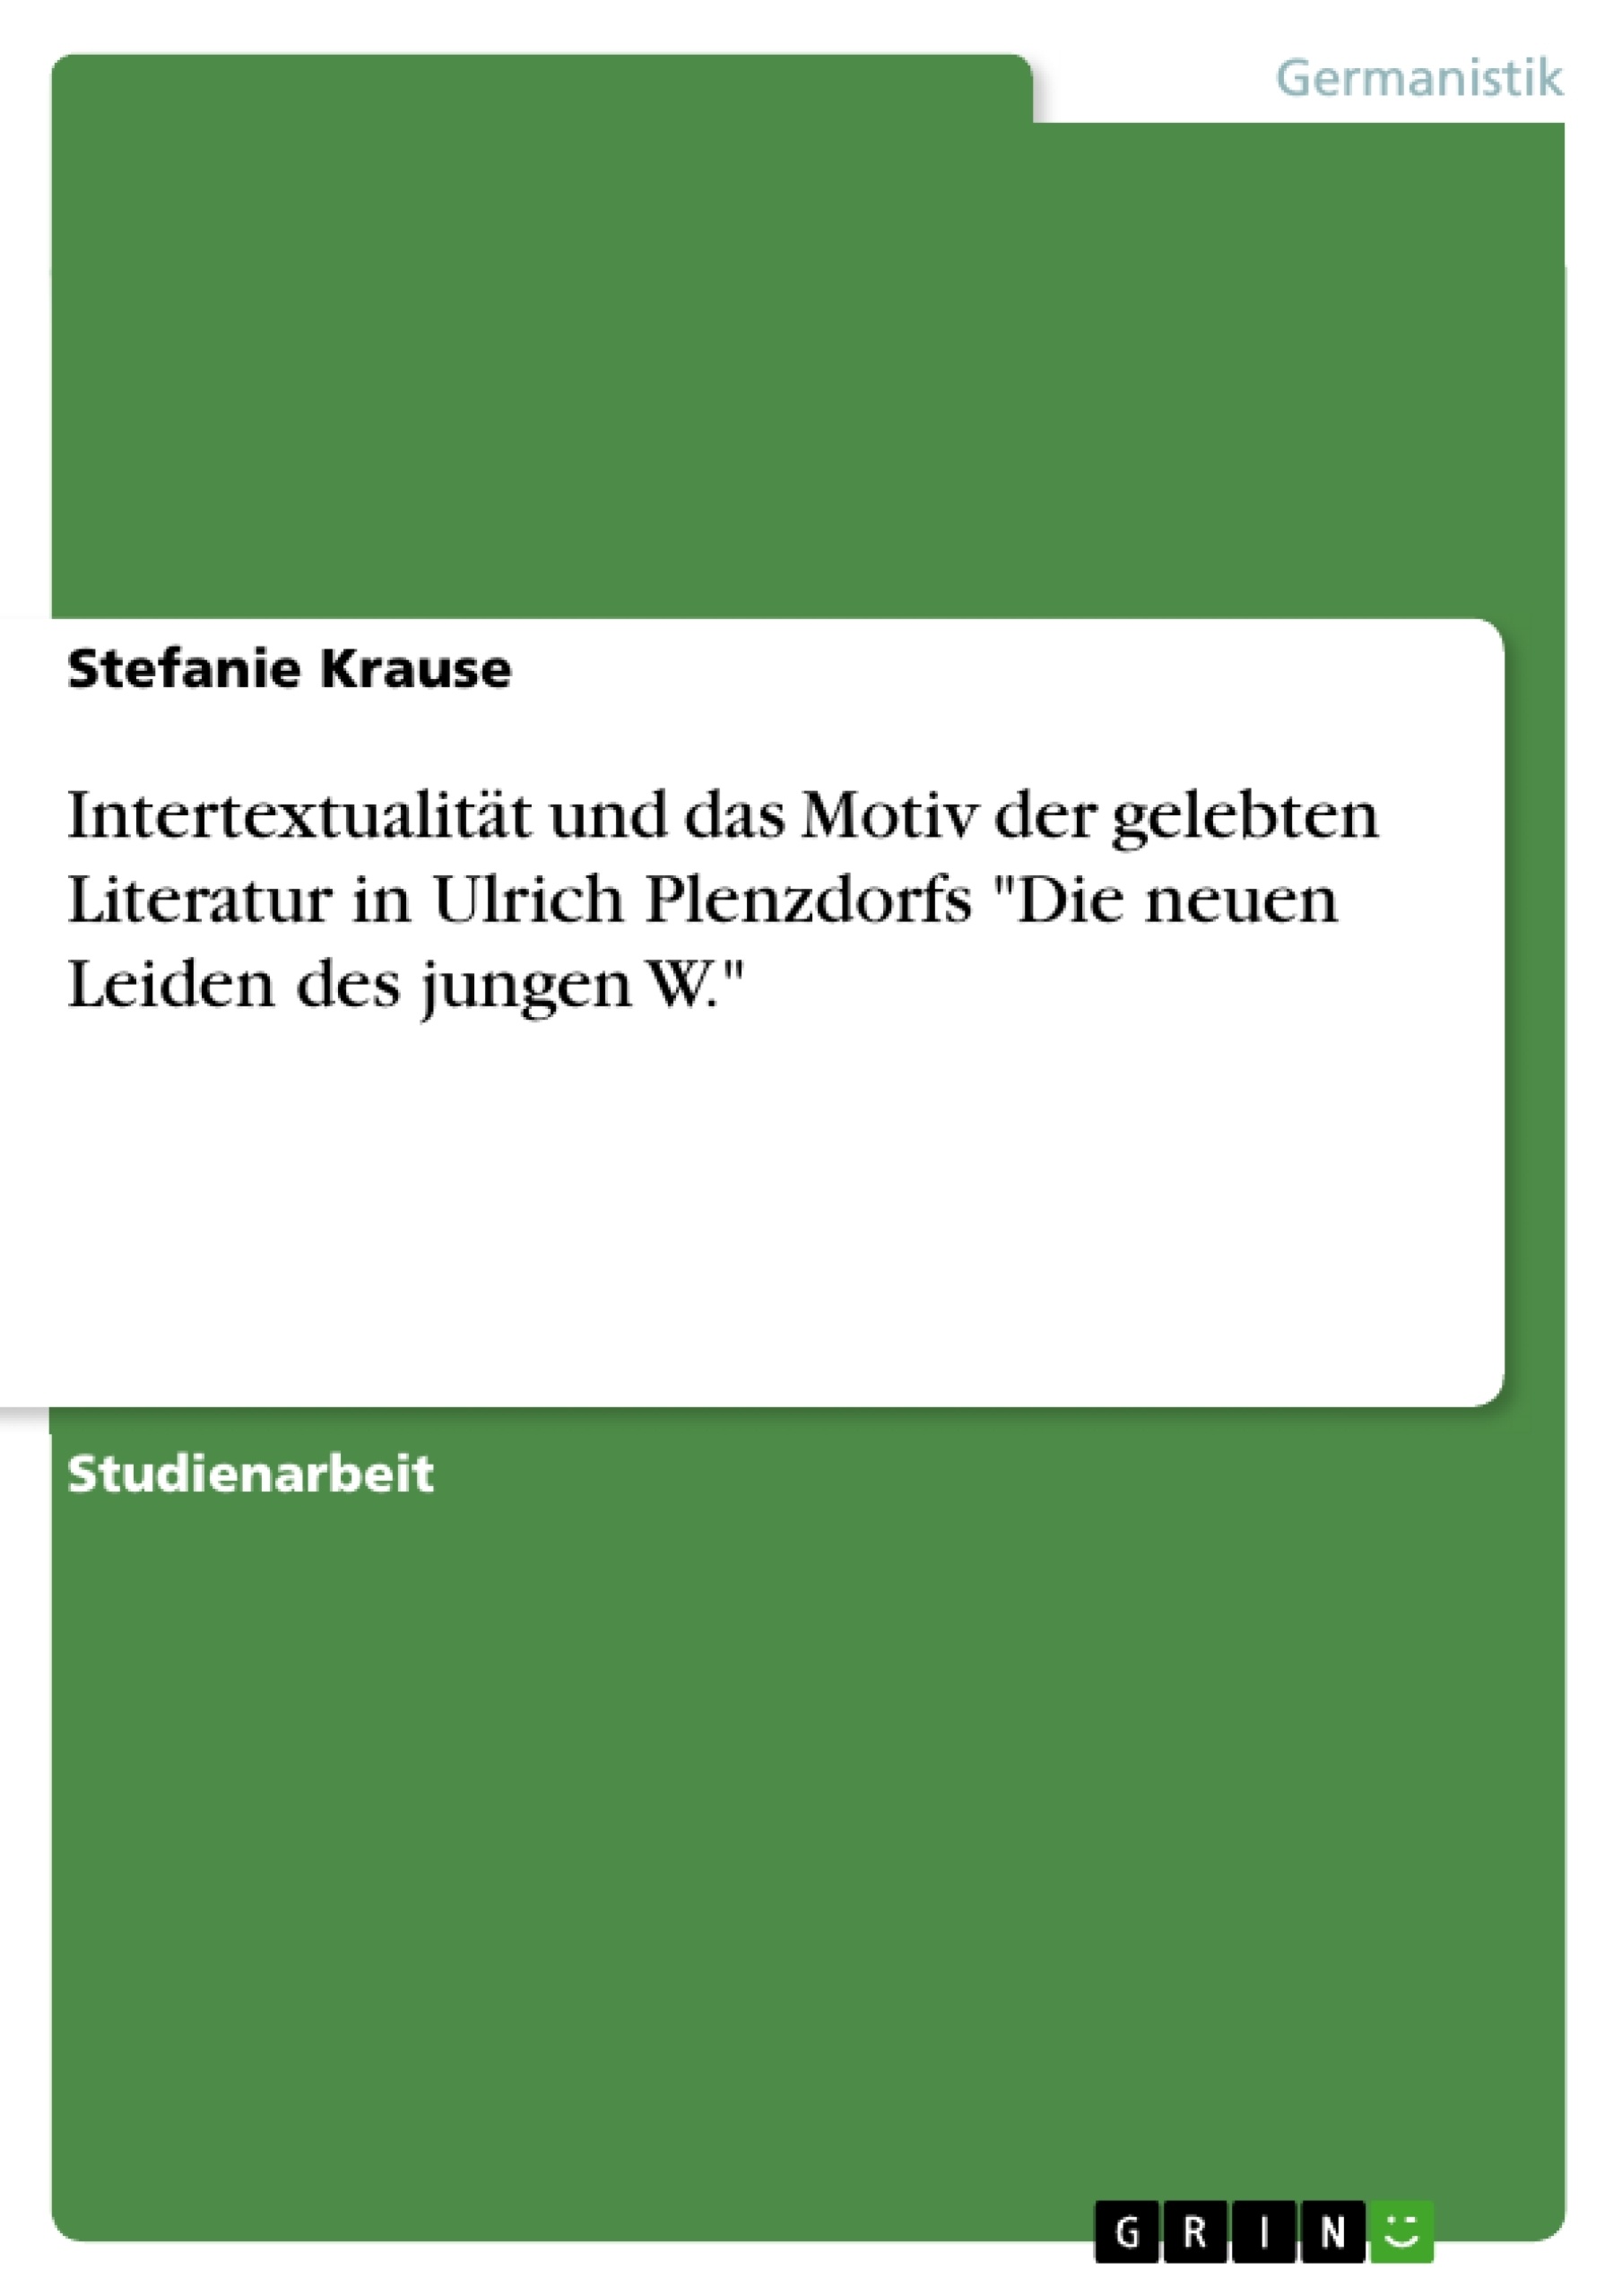 Título: Intertextualität und das Motiv der gelebten Literatur in Ulrich Plenzdorfs "Die neuen Leiden des jungen W."